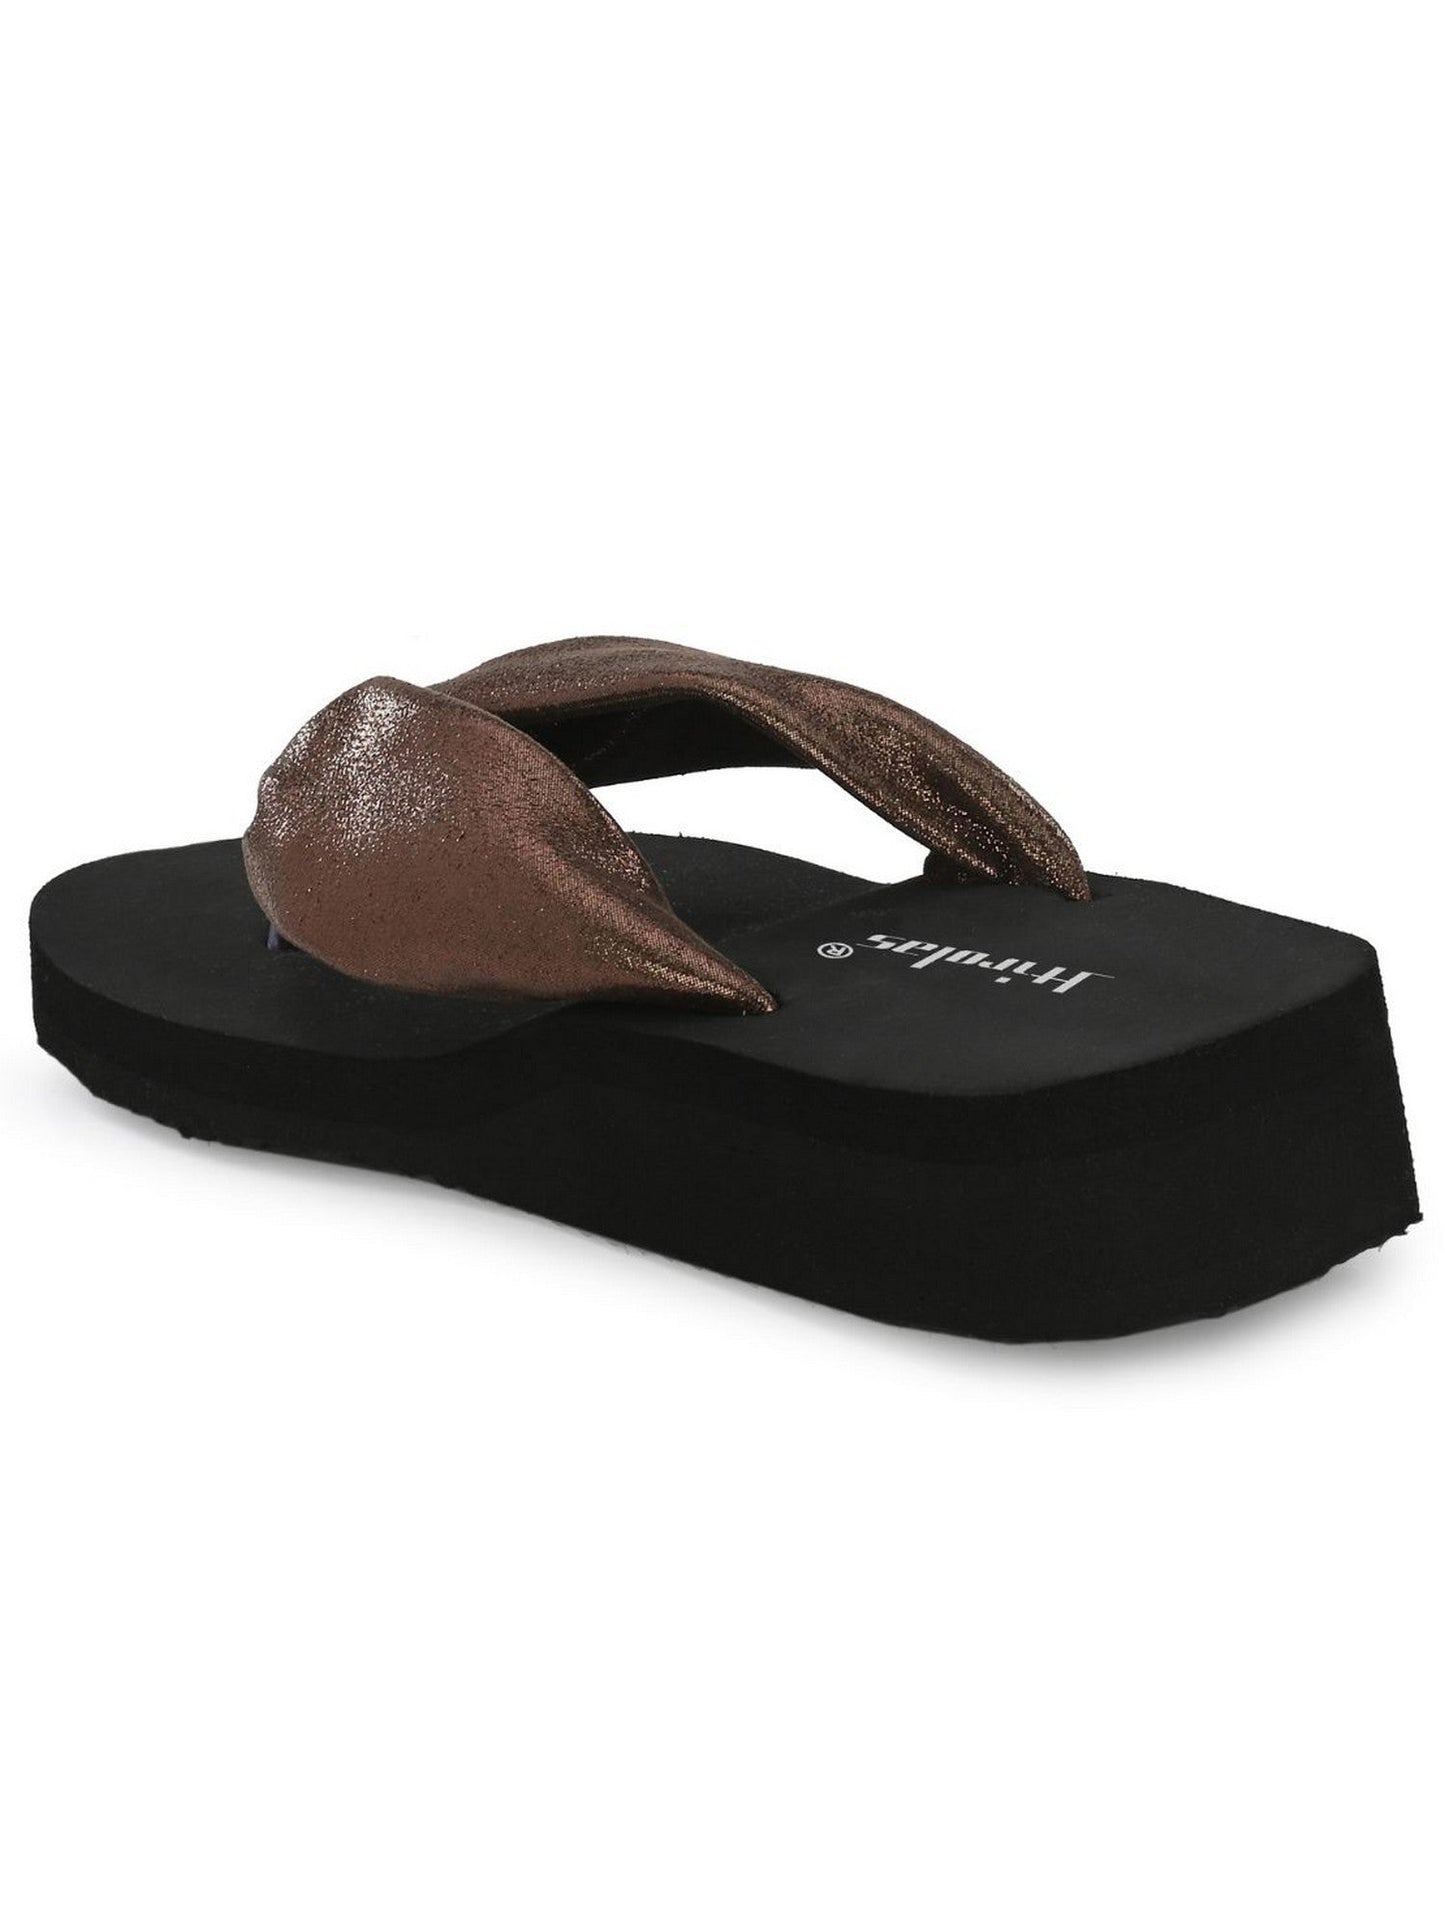 Hirolas® Women Black Copper Shimmer Thong Flip_Flops (HROWFF05BLC)